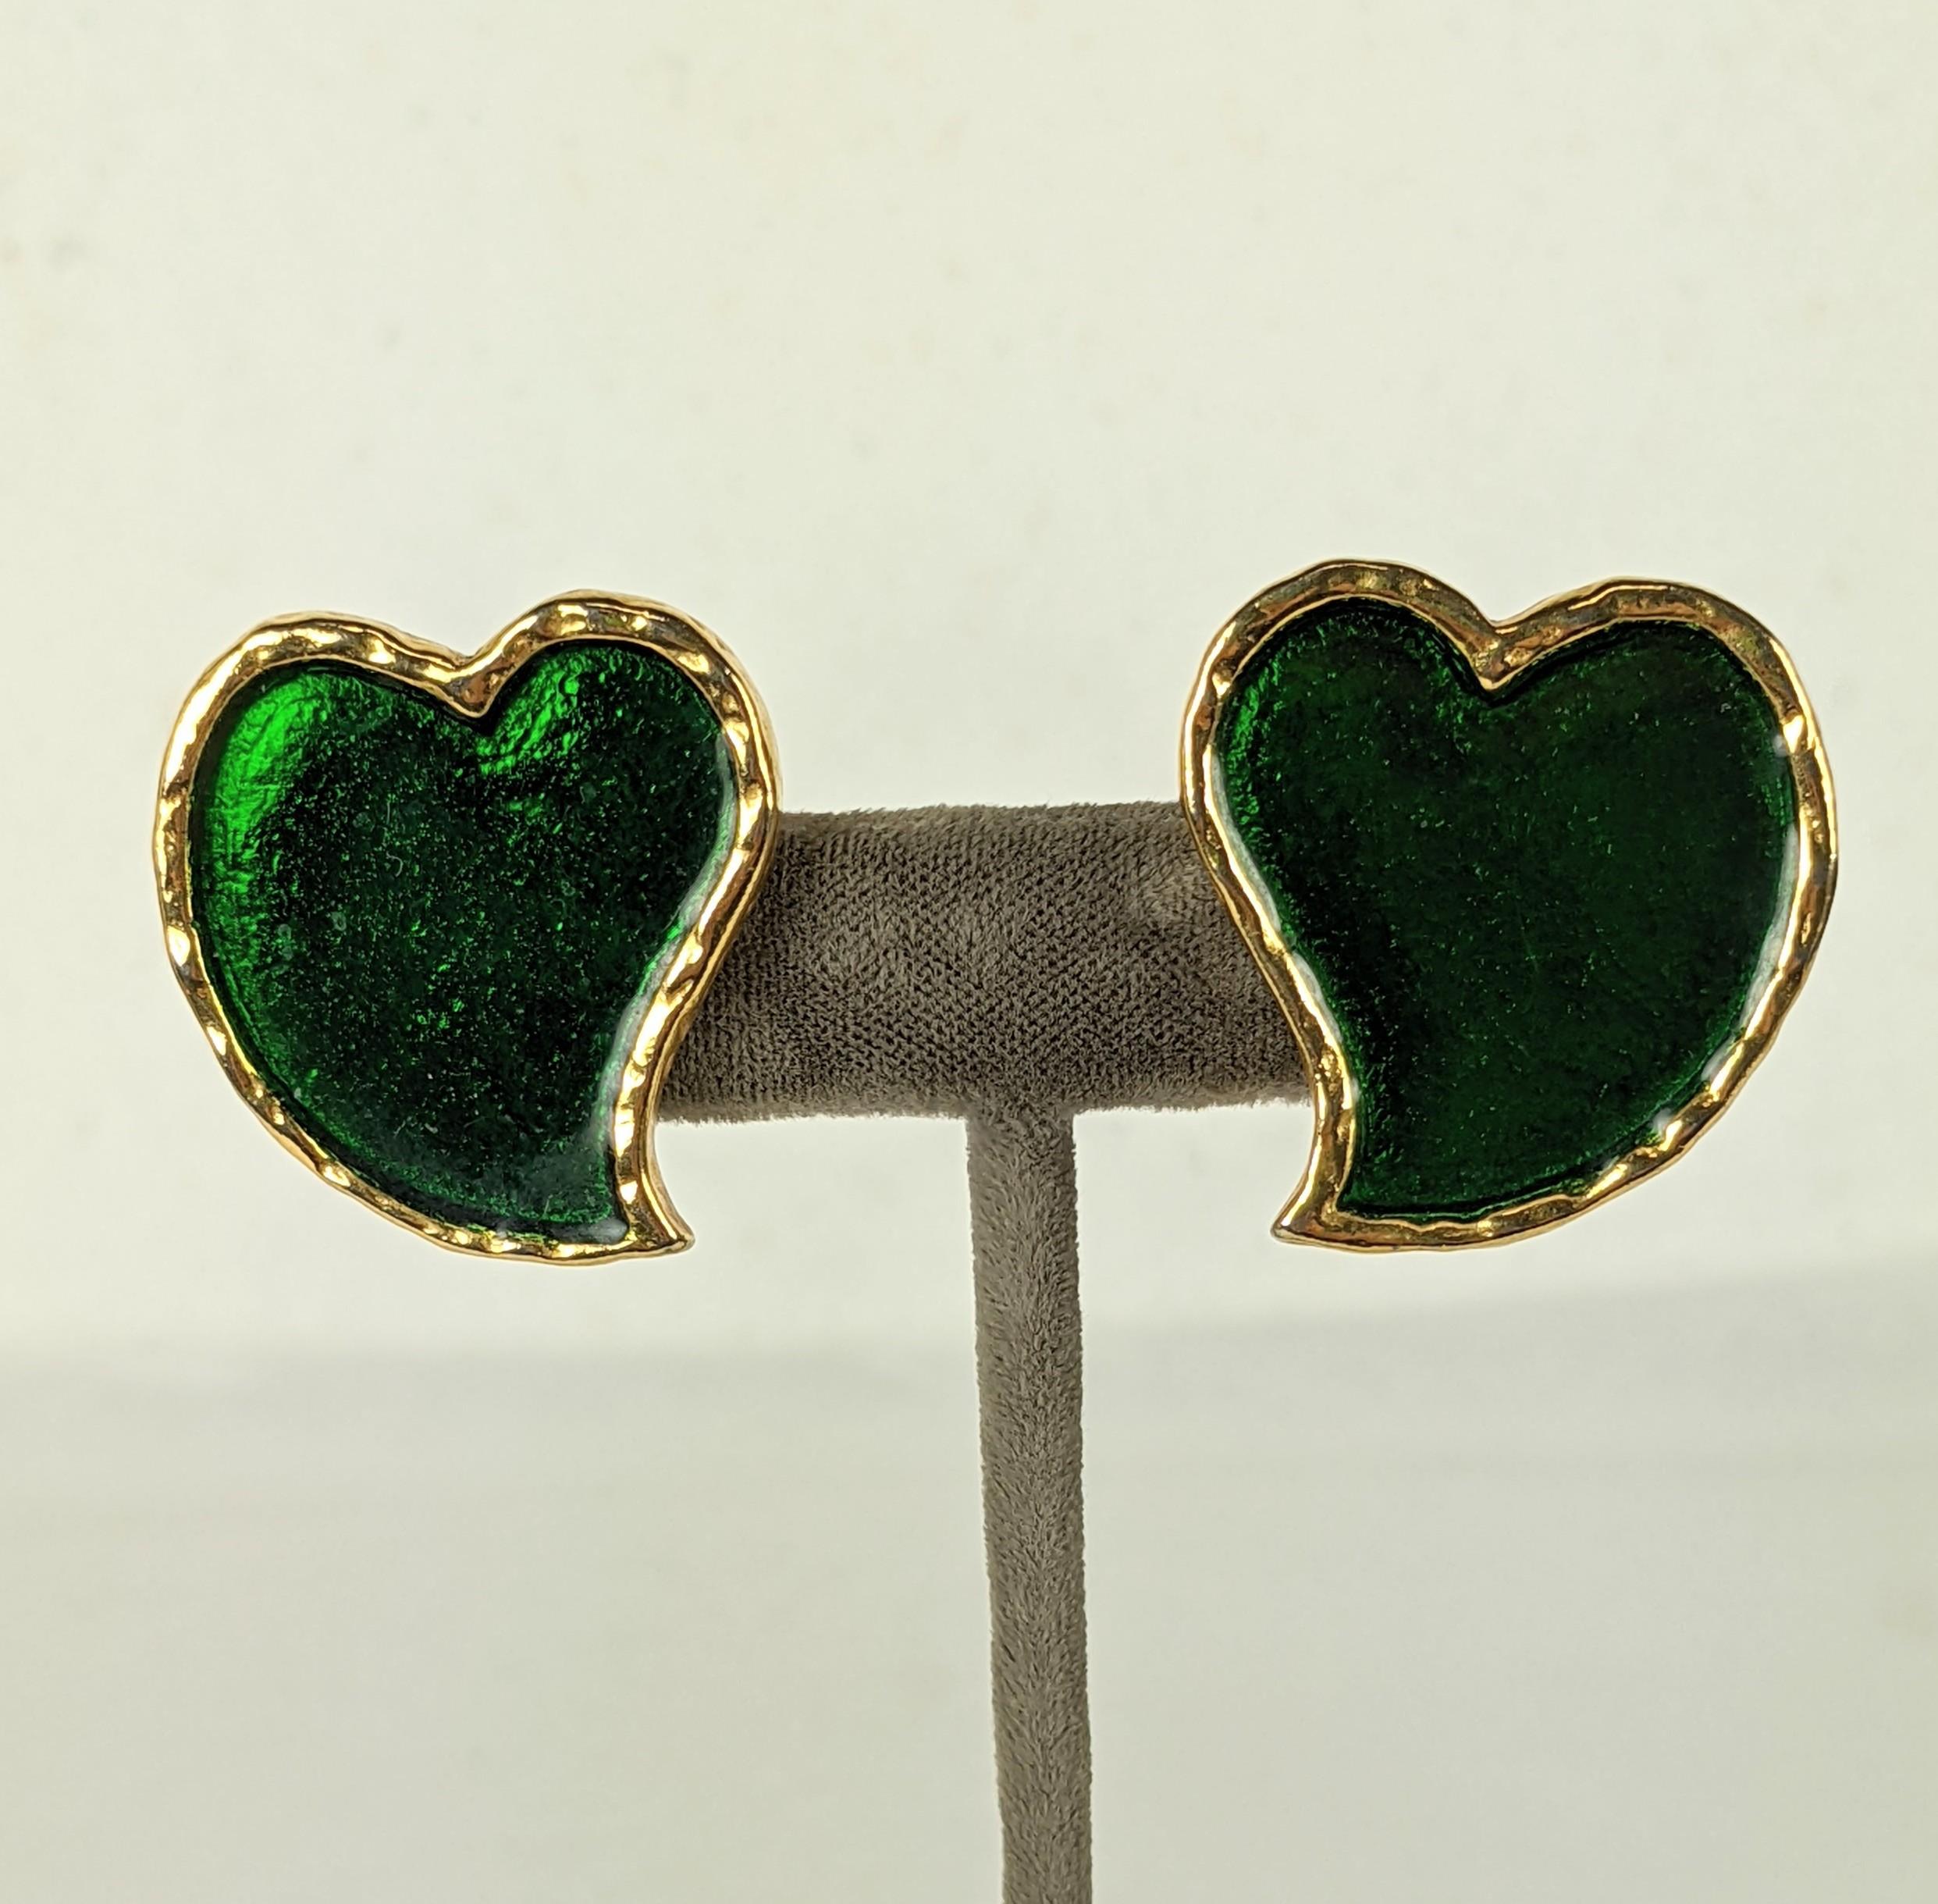 Yves Saint Laurent Ikonische Emaille-Herz-Ohrringe aus den 1980er Jahren. Reichhaltige smaragdgrüne Emaille schmückt die abstrakten herzförmigen Formen von Maison Goossens. 1.25